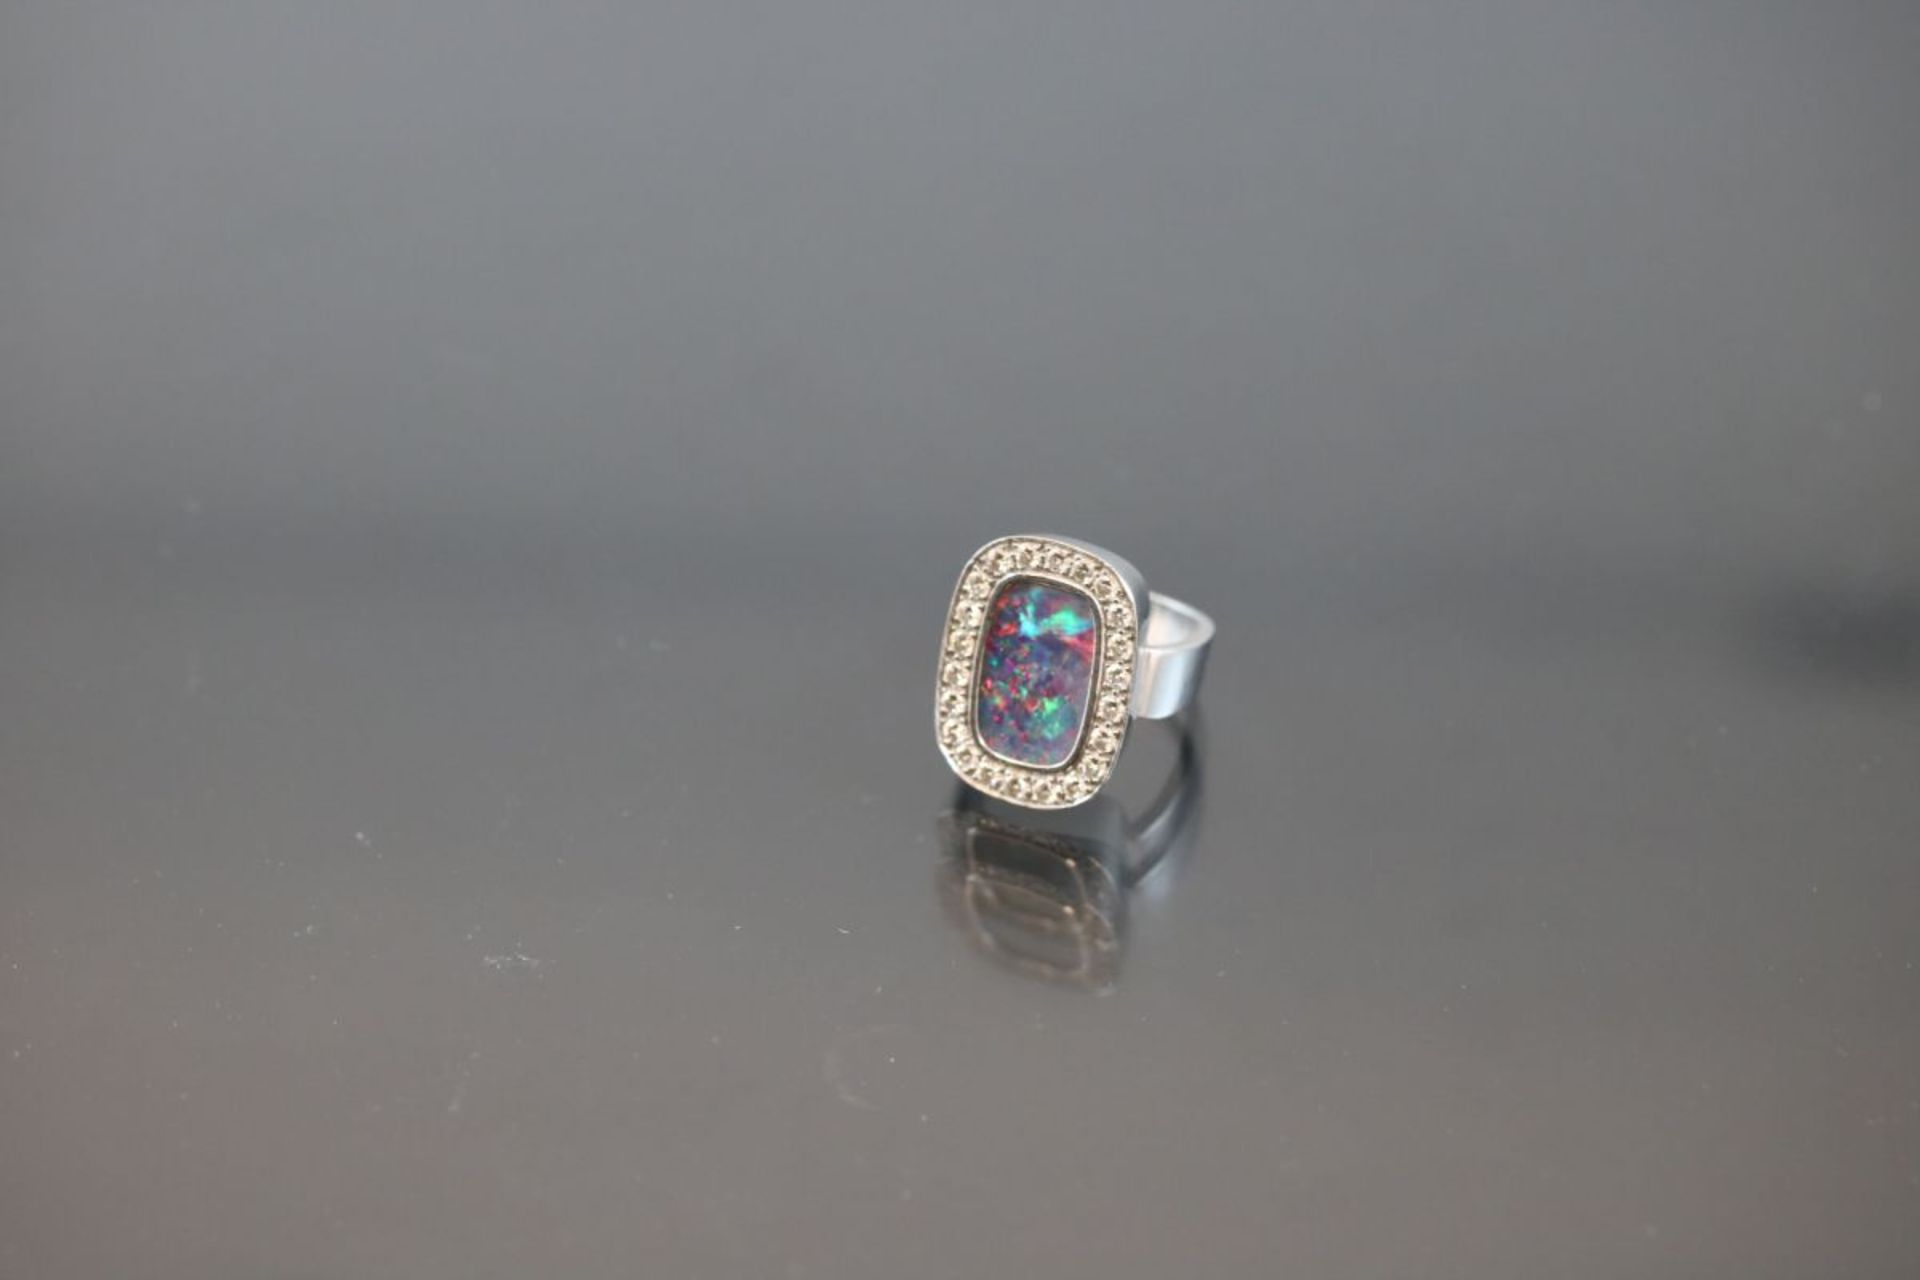 Opal-Brillant-Ring, 750 Weißgold11,3 Gramm 22 Brillanten, 0,66 ct., tw/vsi. Ringgröße: